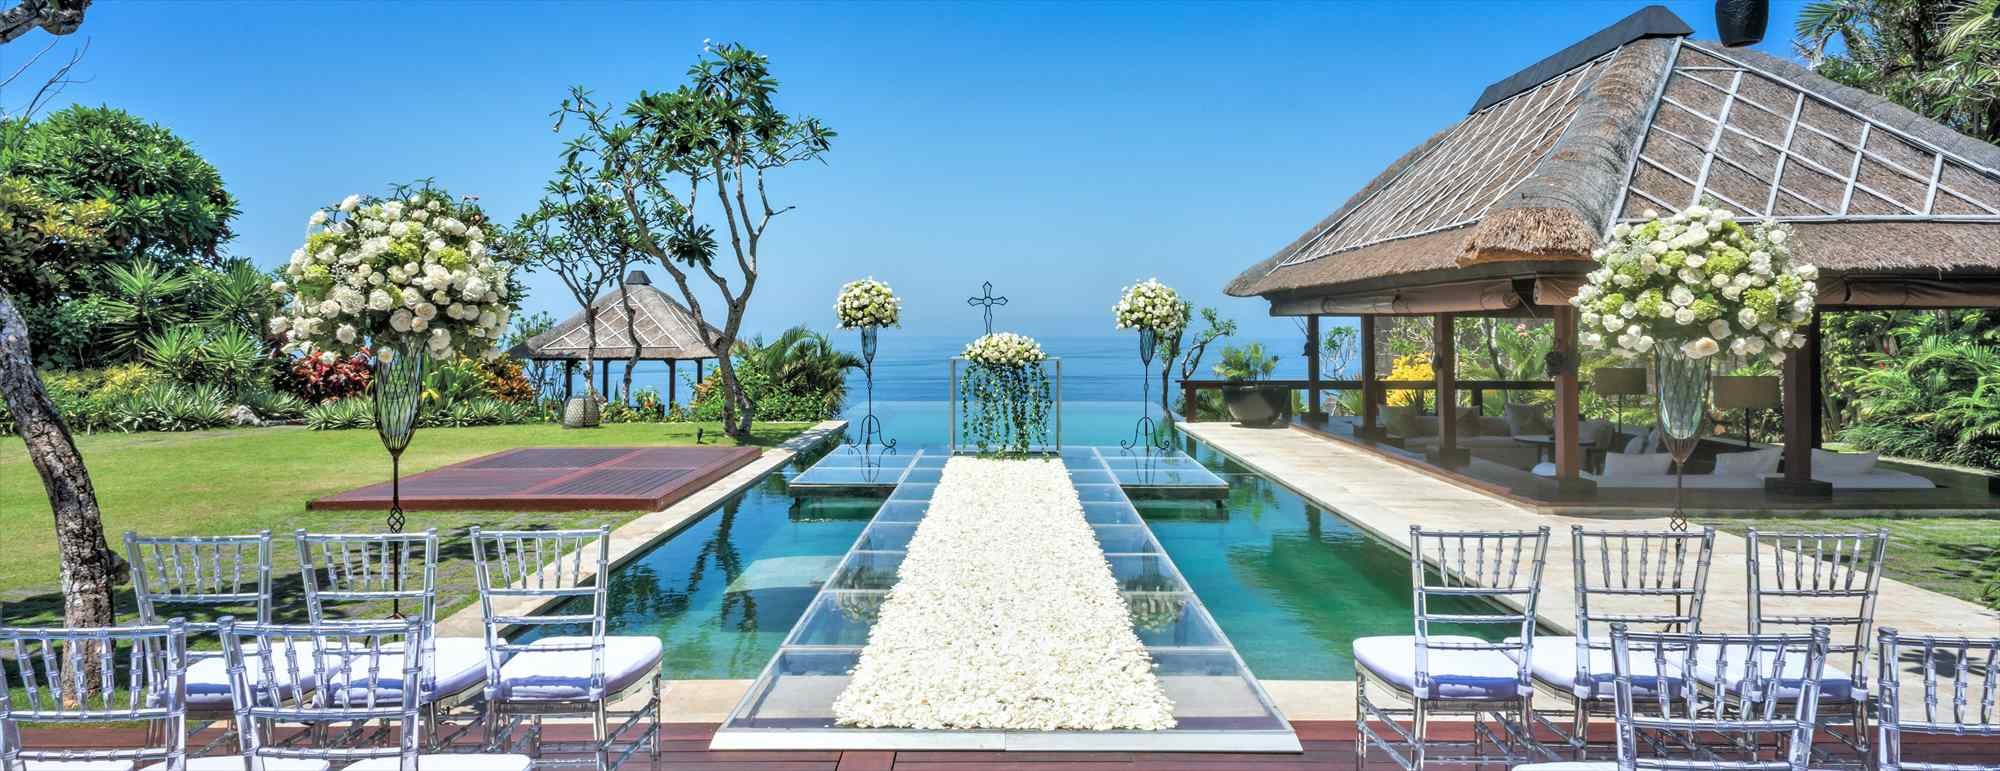 ブルガリ・リゾート ヴィラ＆マンション バリ島ウェディング・結婚式・挙式│Bulgari Resort Bali Villa & Mansion Wedding